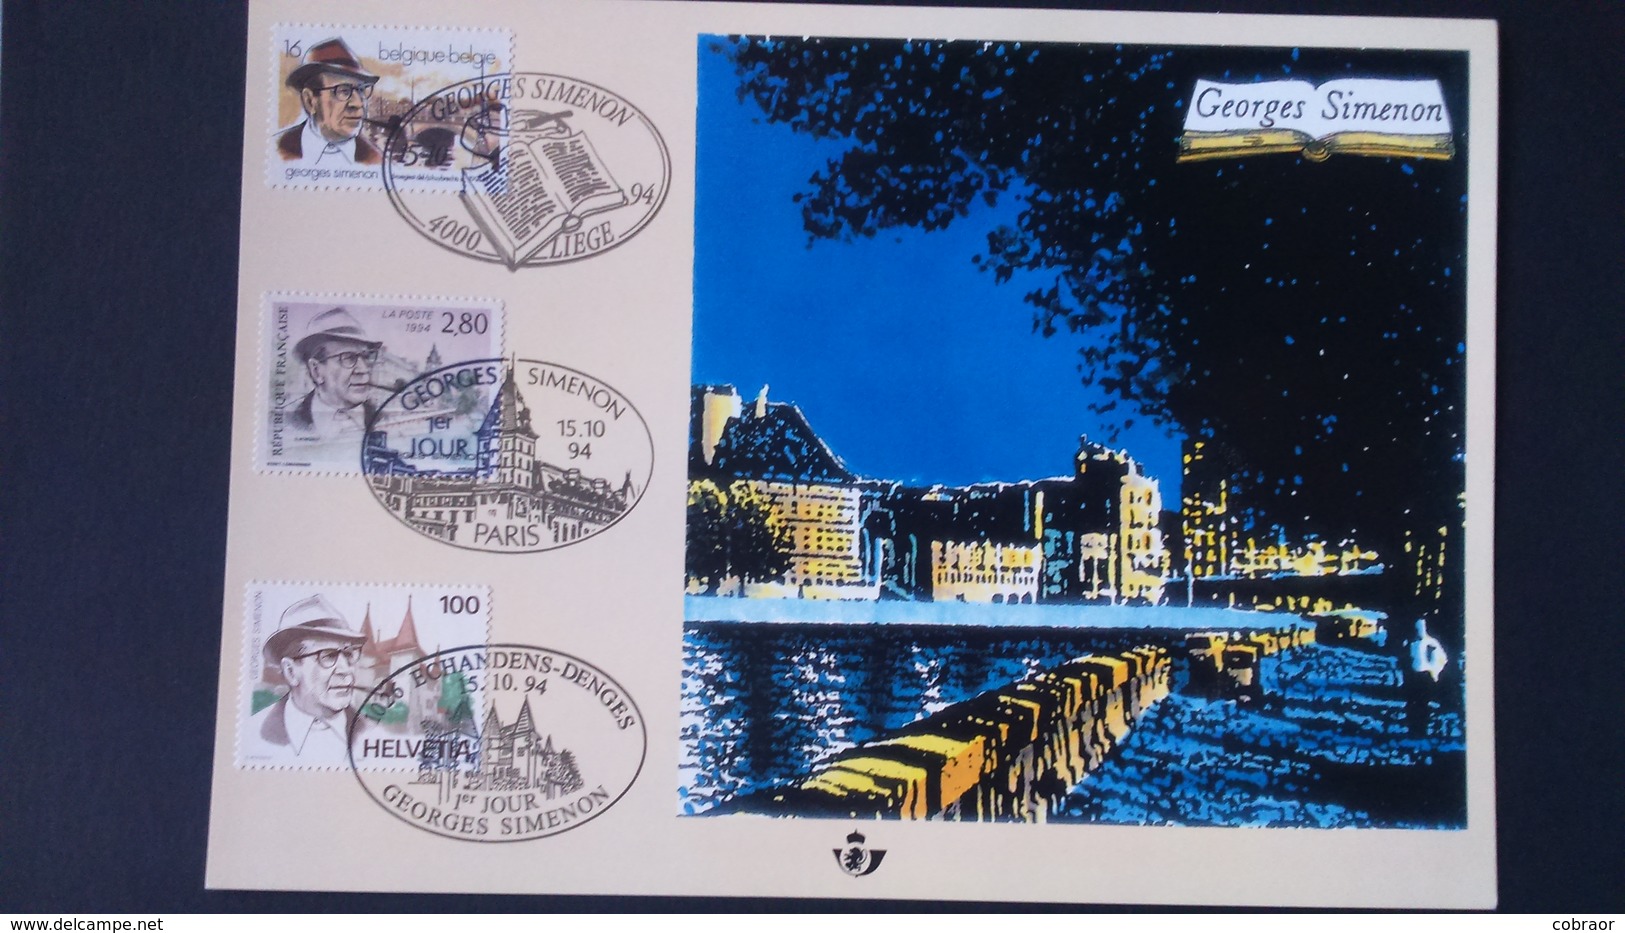 Émission Commune: Georges Simenon ( Belgique ) - Cartes Souvenir – Emissions Communes [HK]